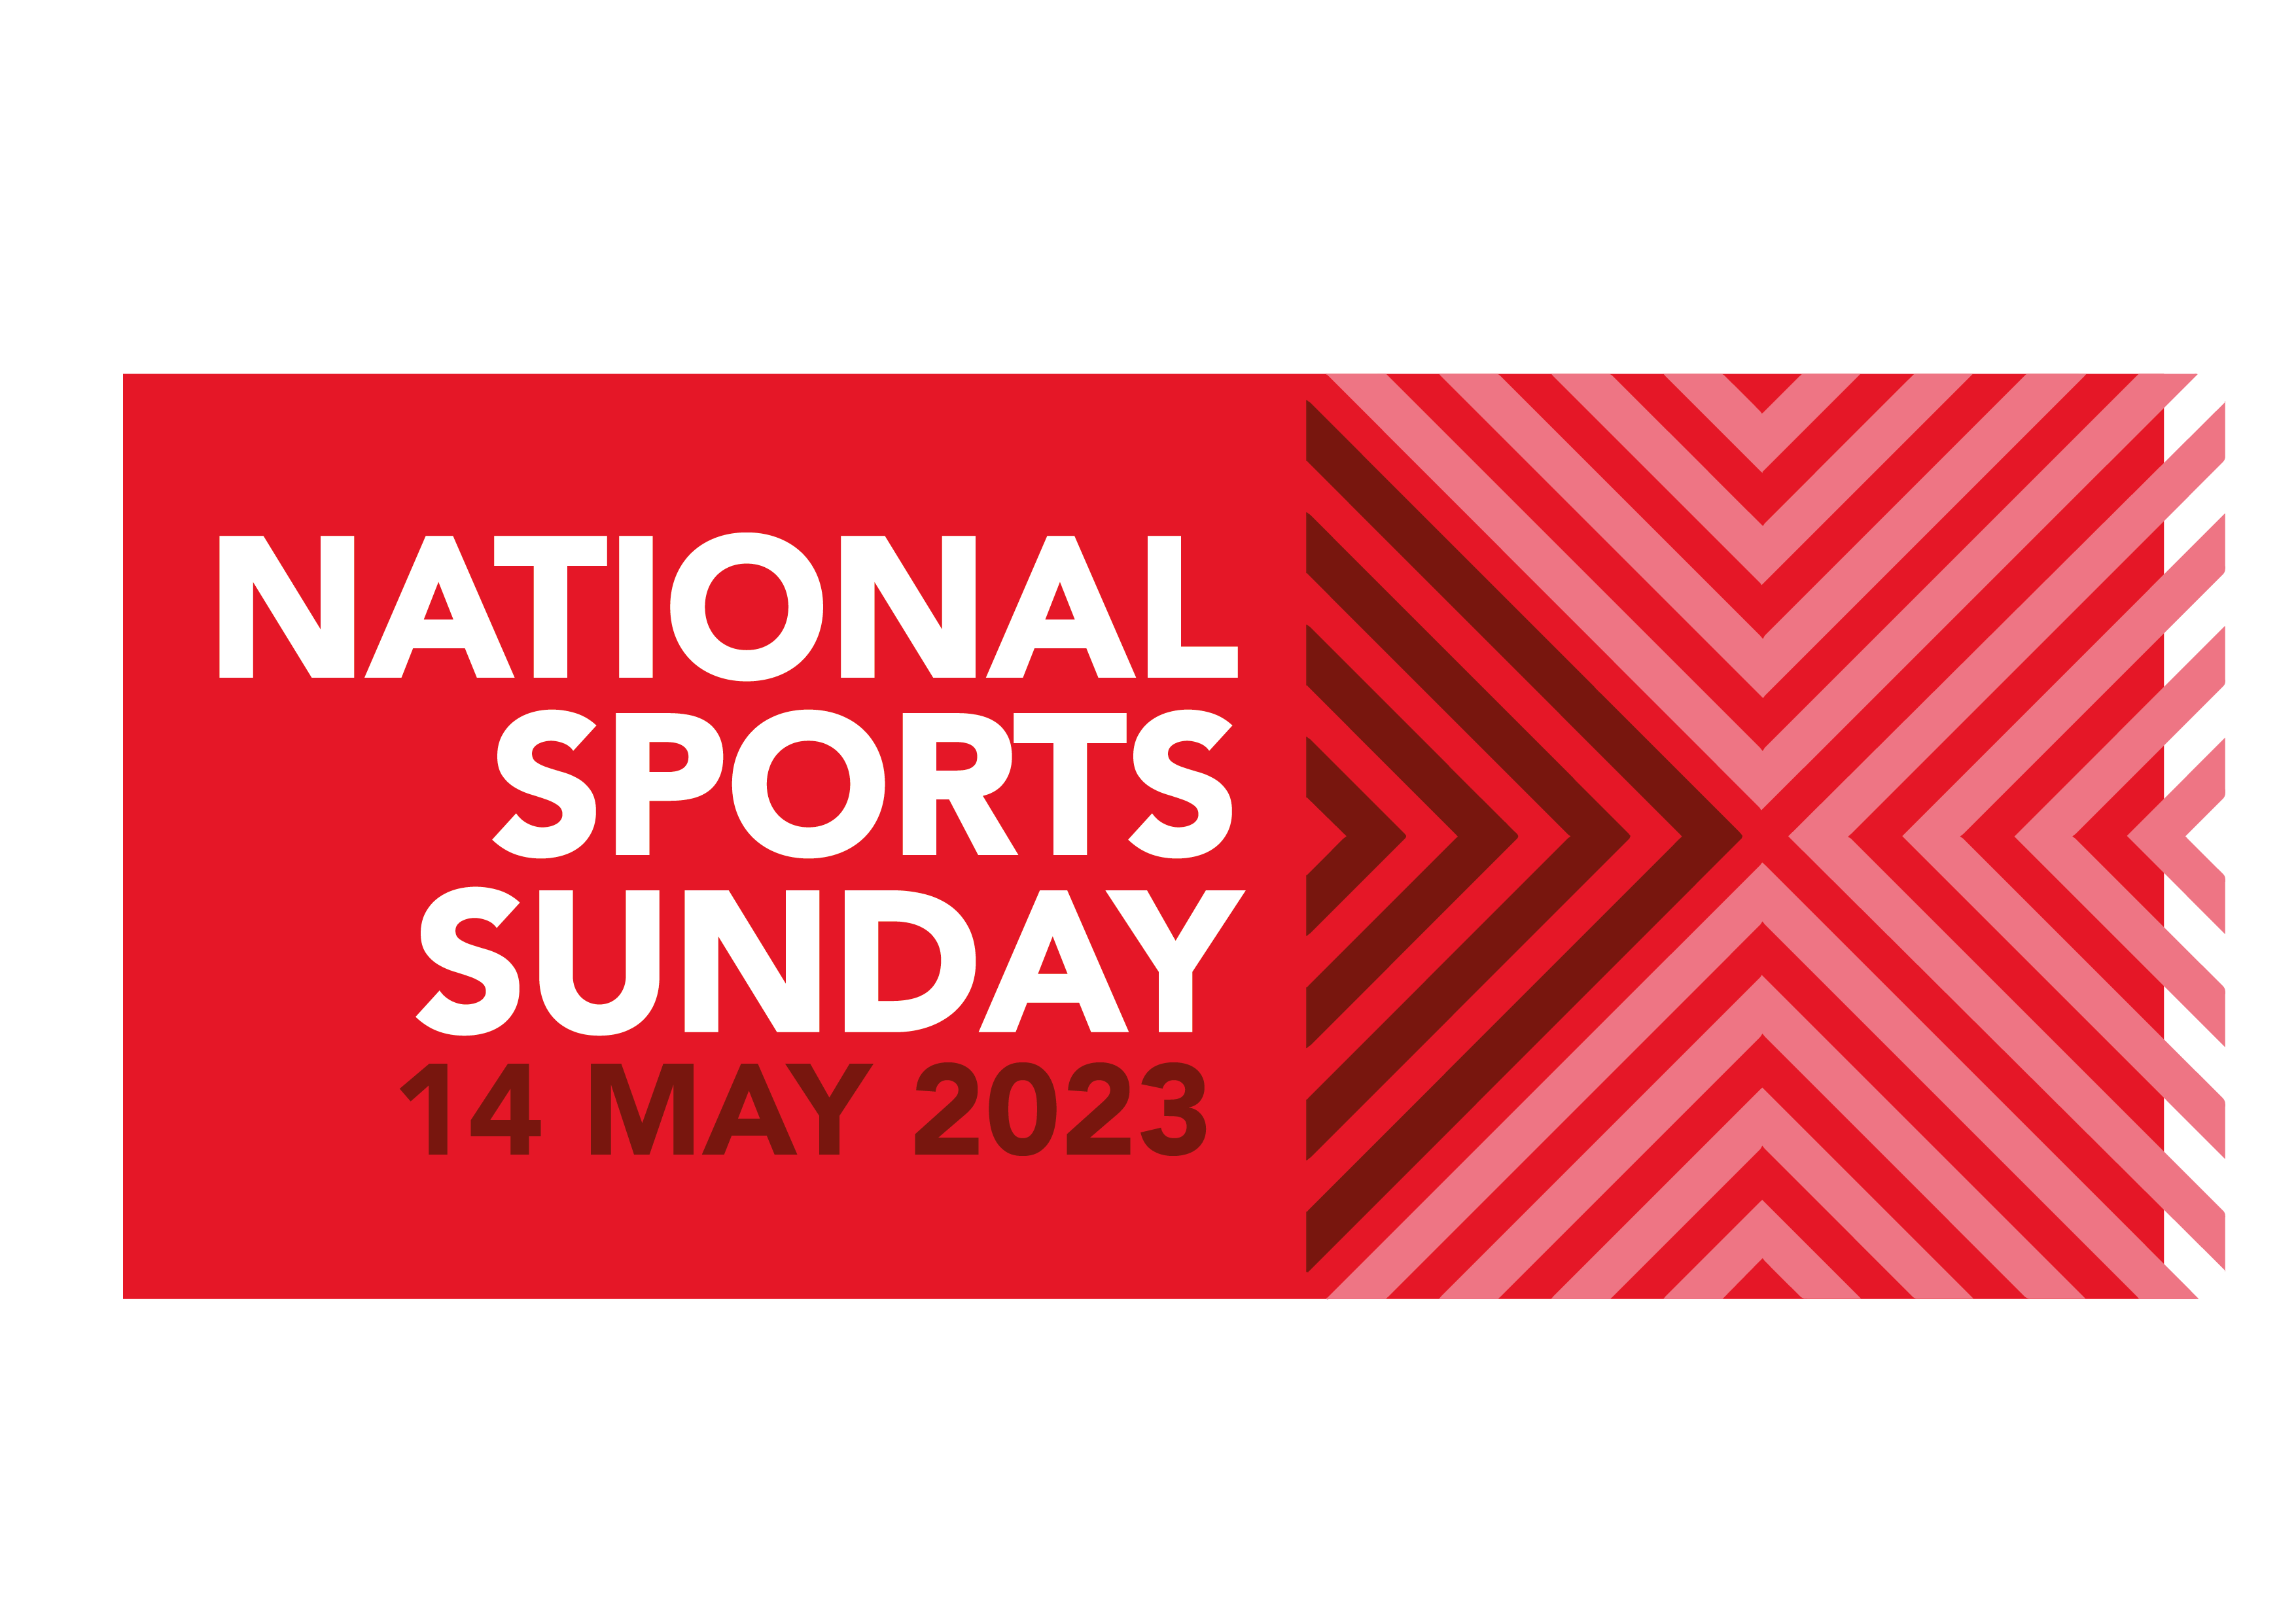 National Sports Sunday 2023